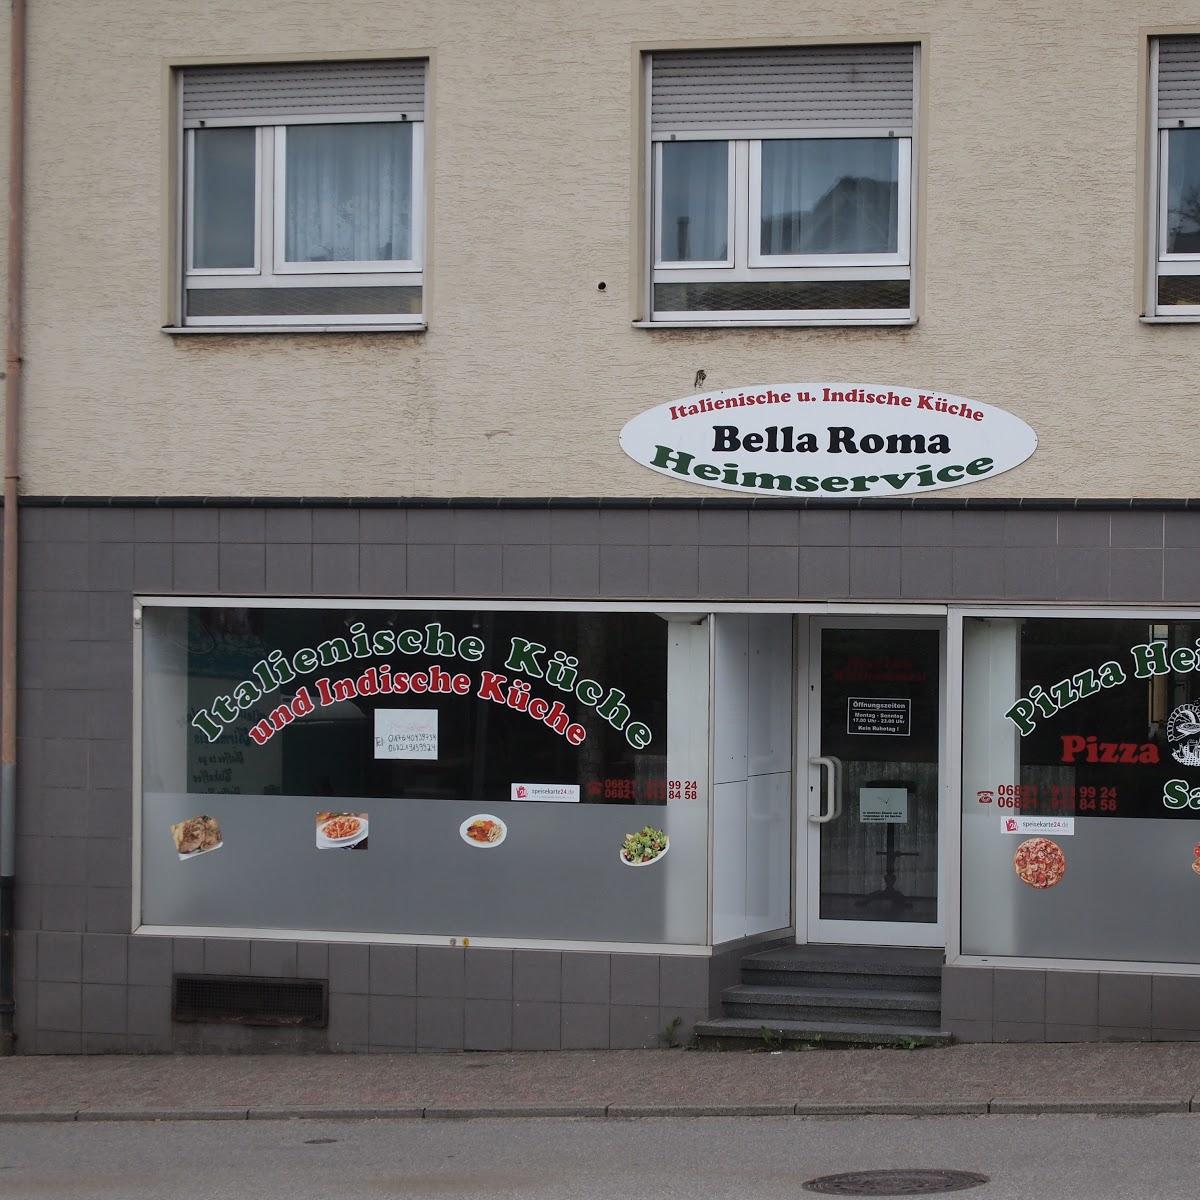 Restaurant "Pizzeria Bella Roma" in Schiffweiler